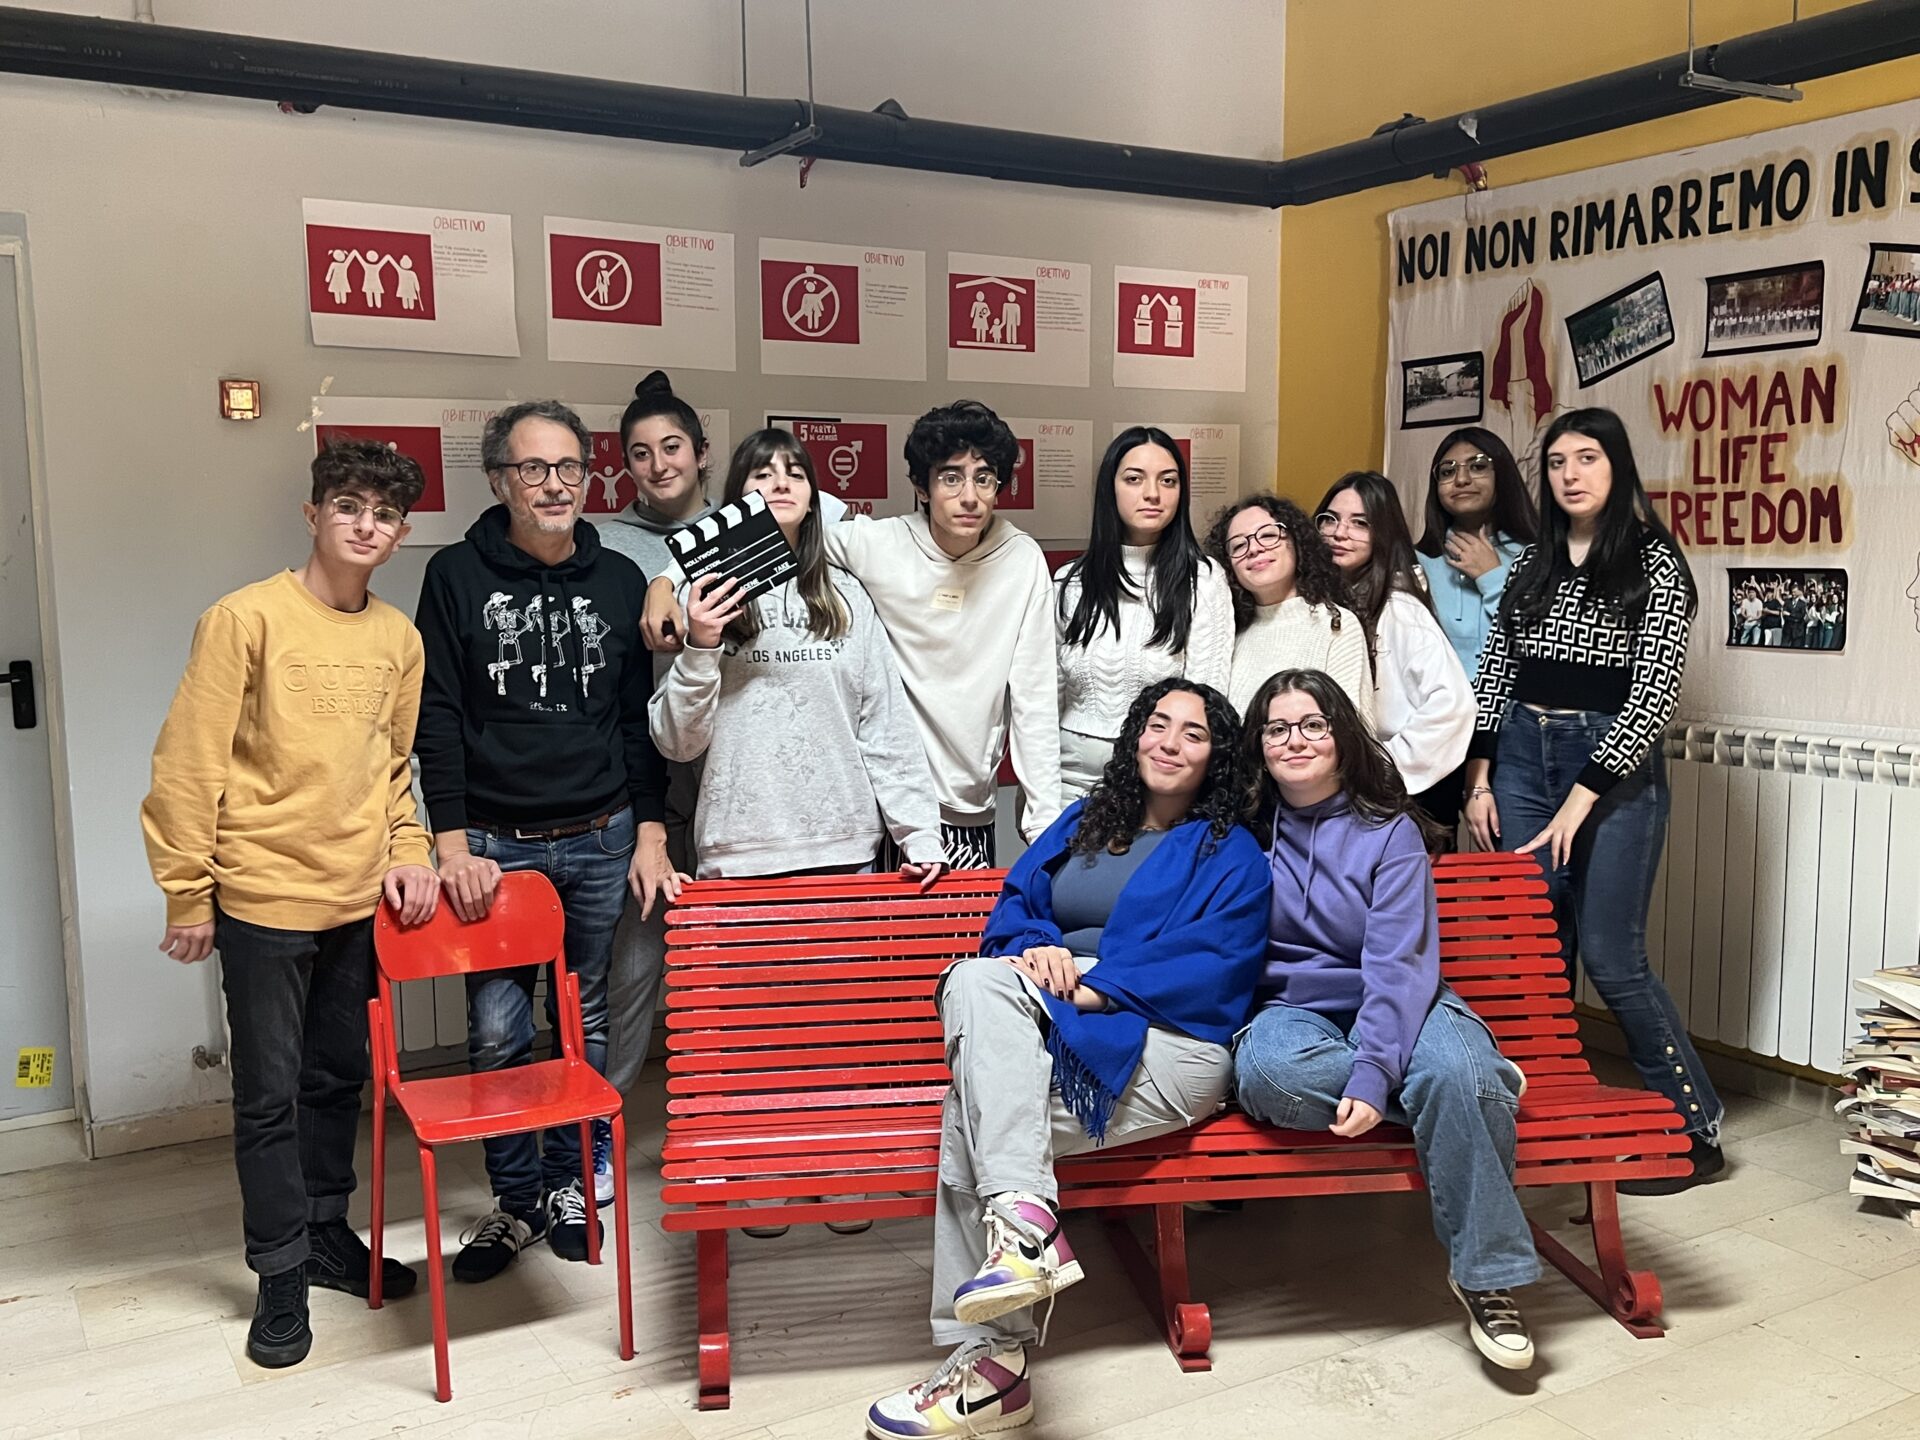 Progetto Smart al Cedir: gli studenti dell’Alvaro di Palmi presentano un cortometraggio sul contrasto alla violenza di genere